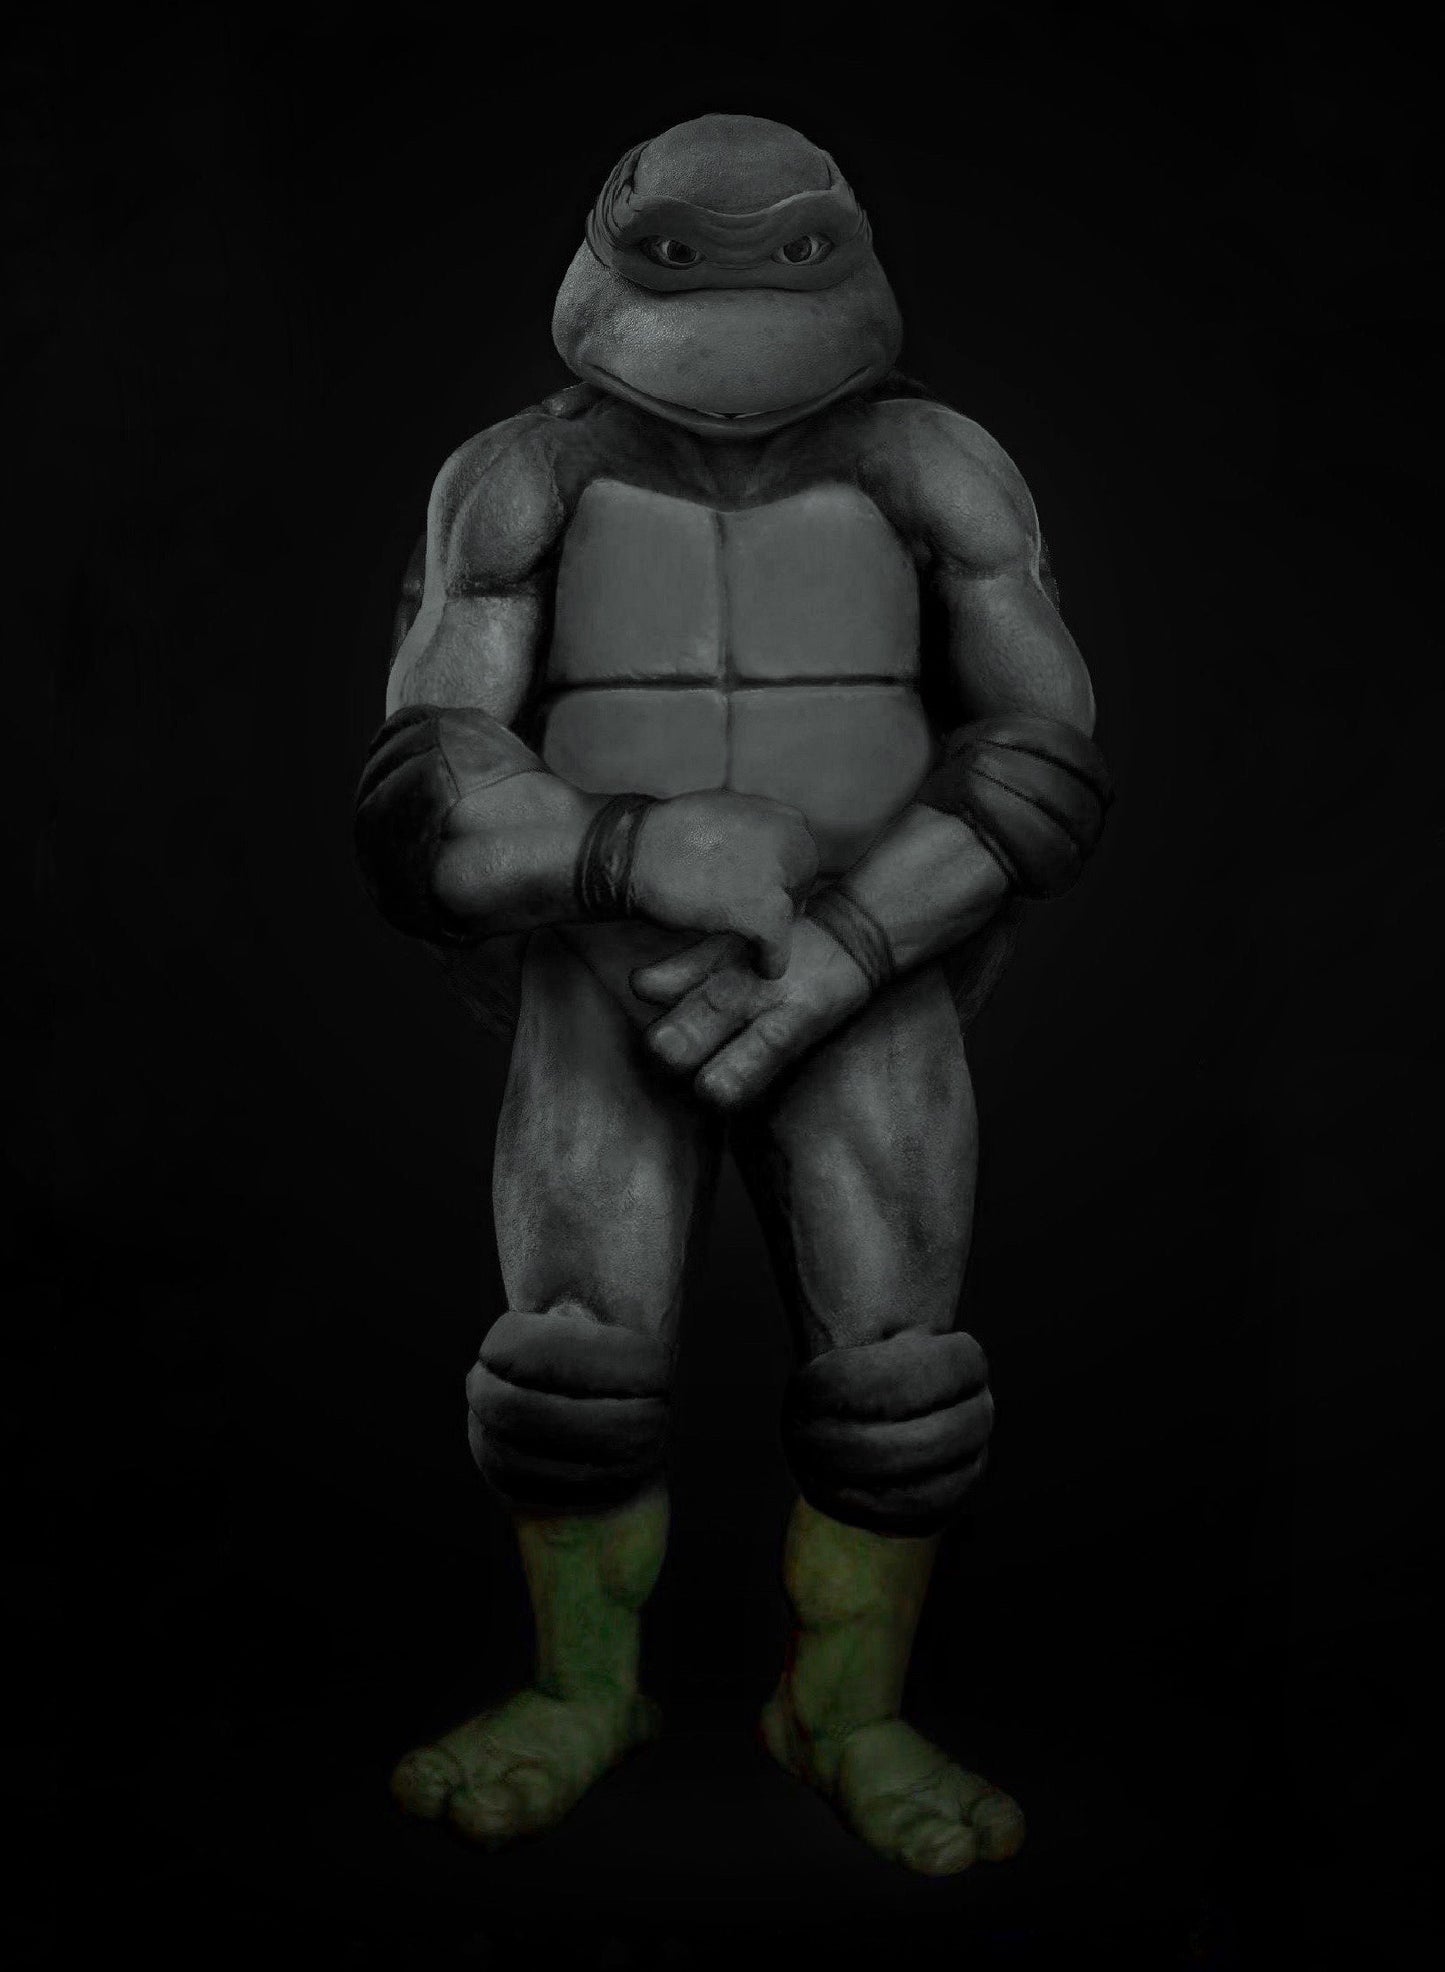 Turtle Costume Parts: Feet + Calves